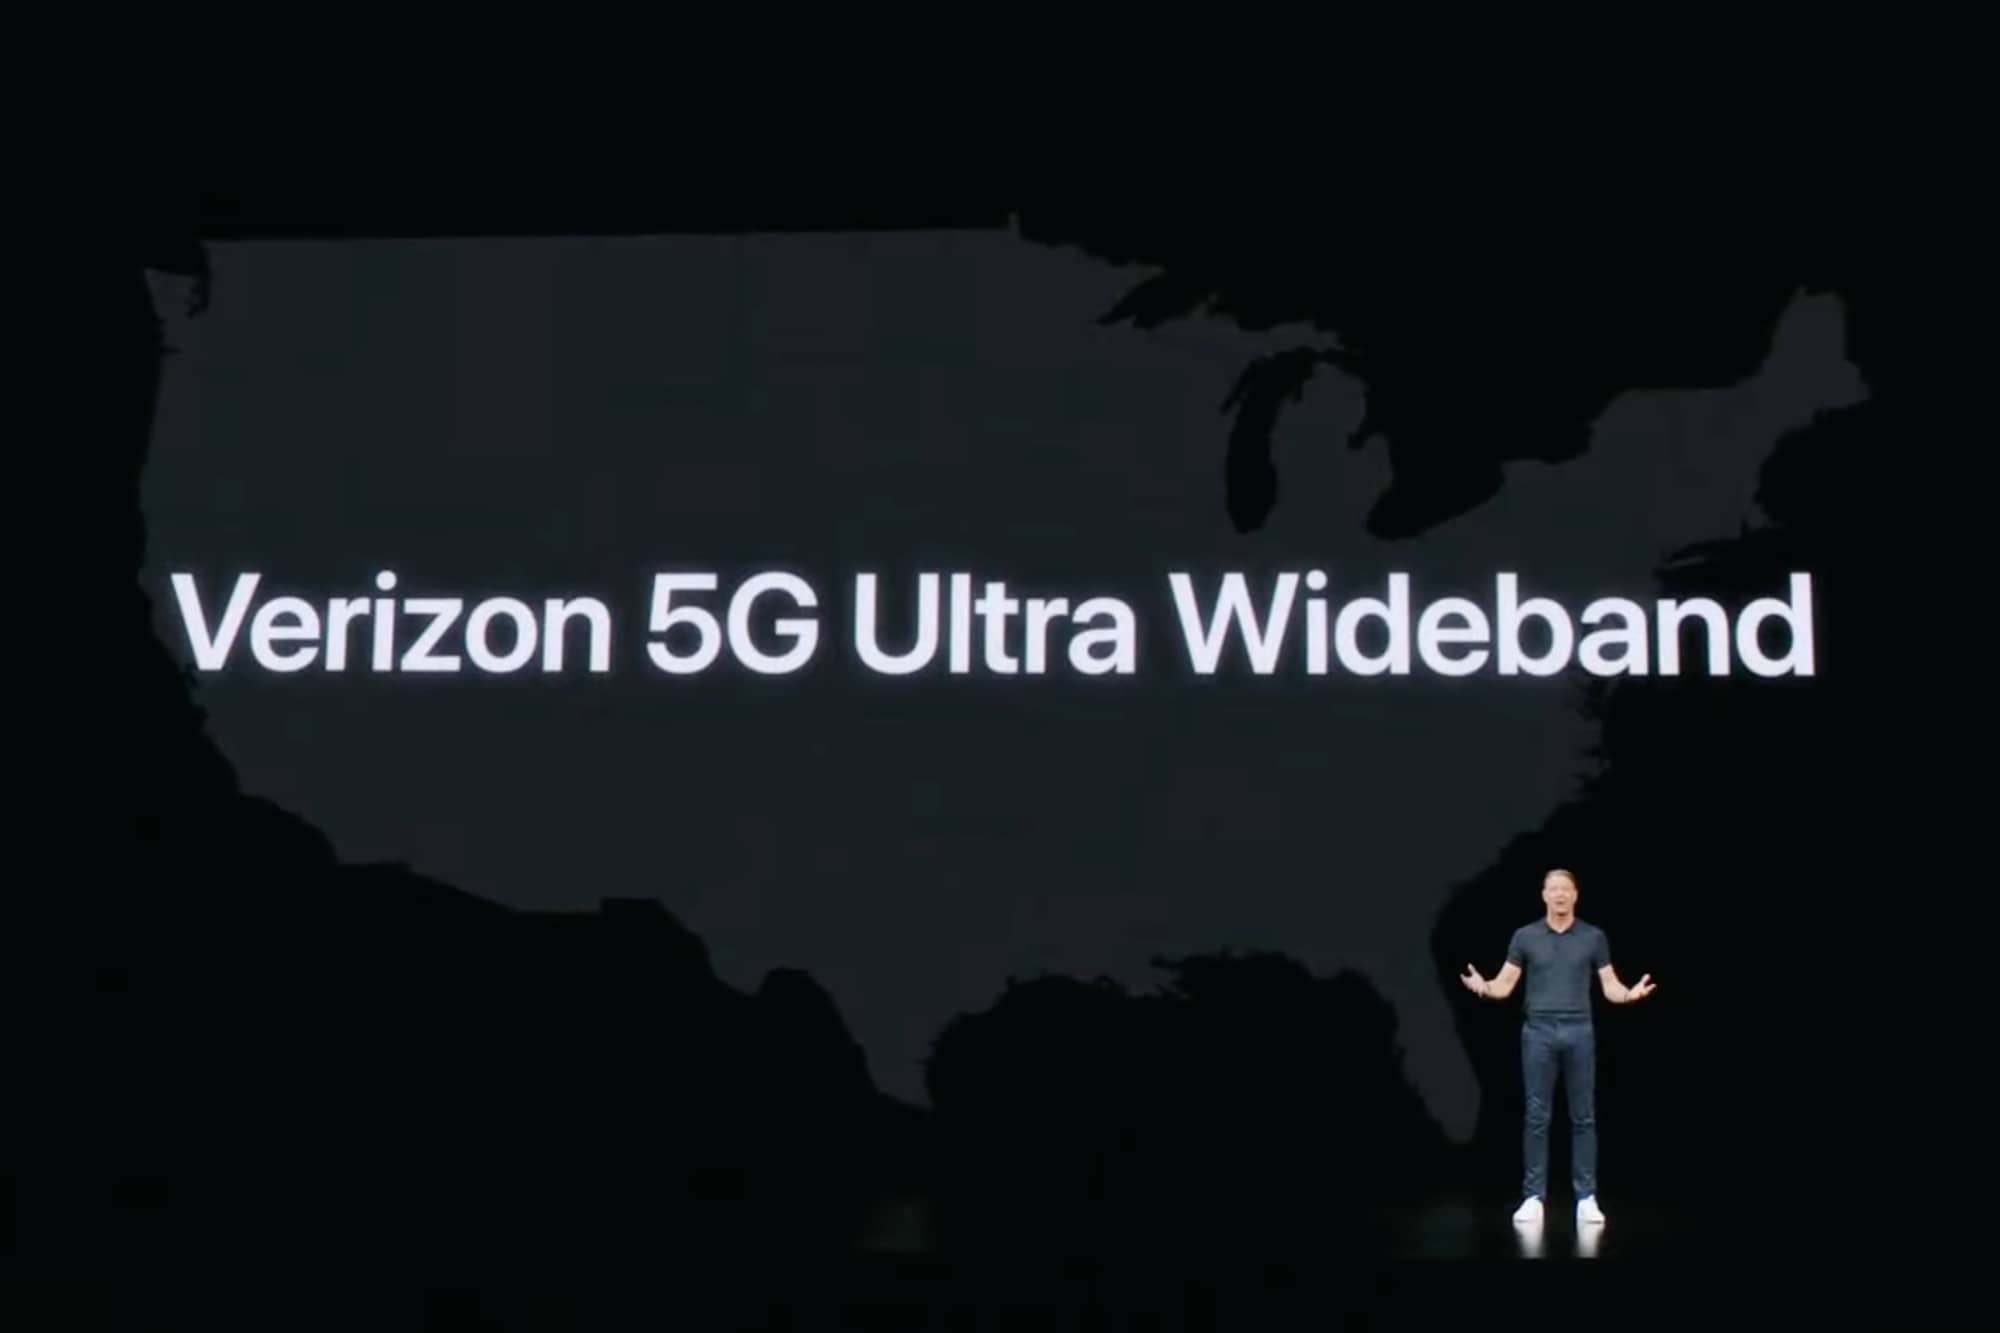 O CEO da Verizon, Hans Vestberg, no palco anunciando 5G Ultra Wideband.